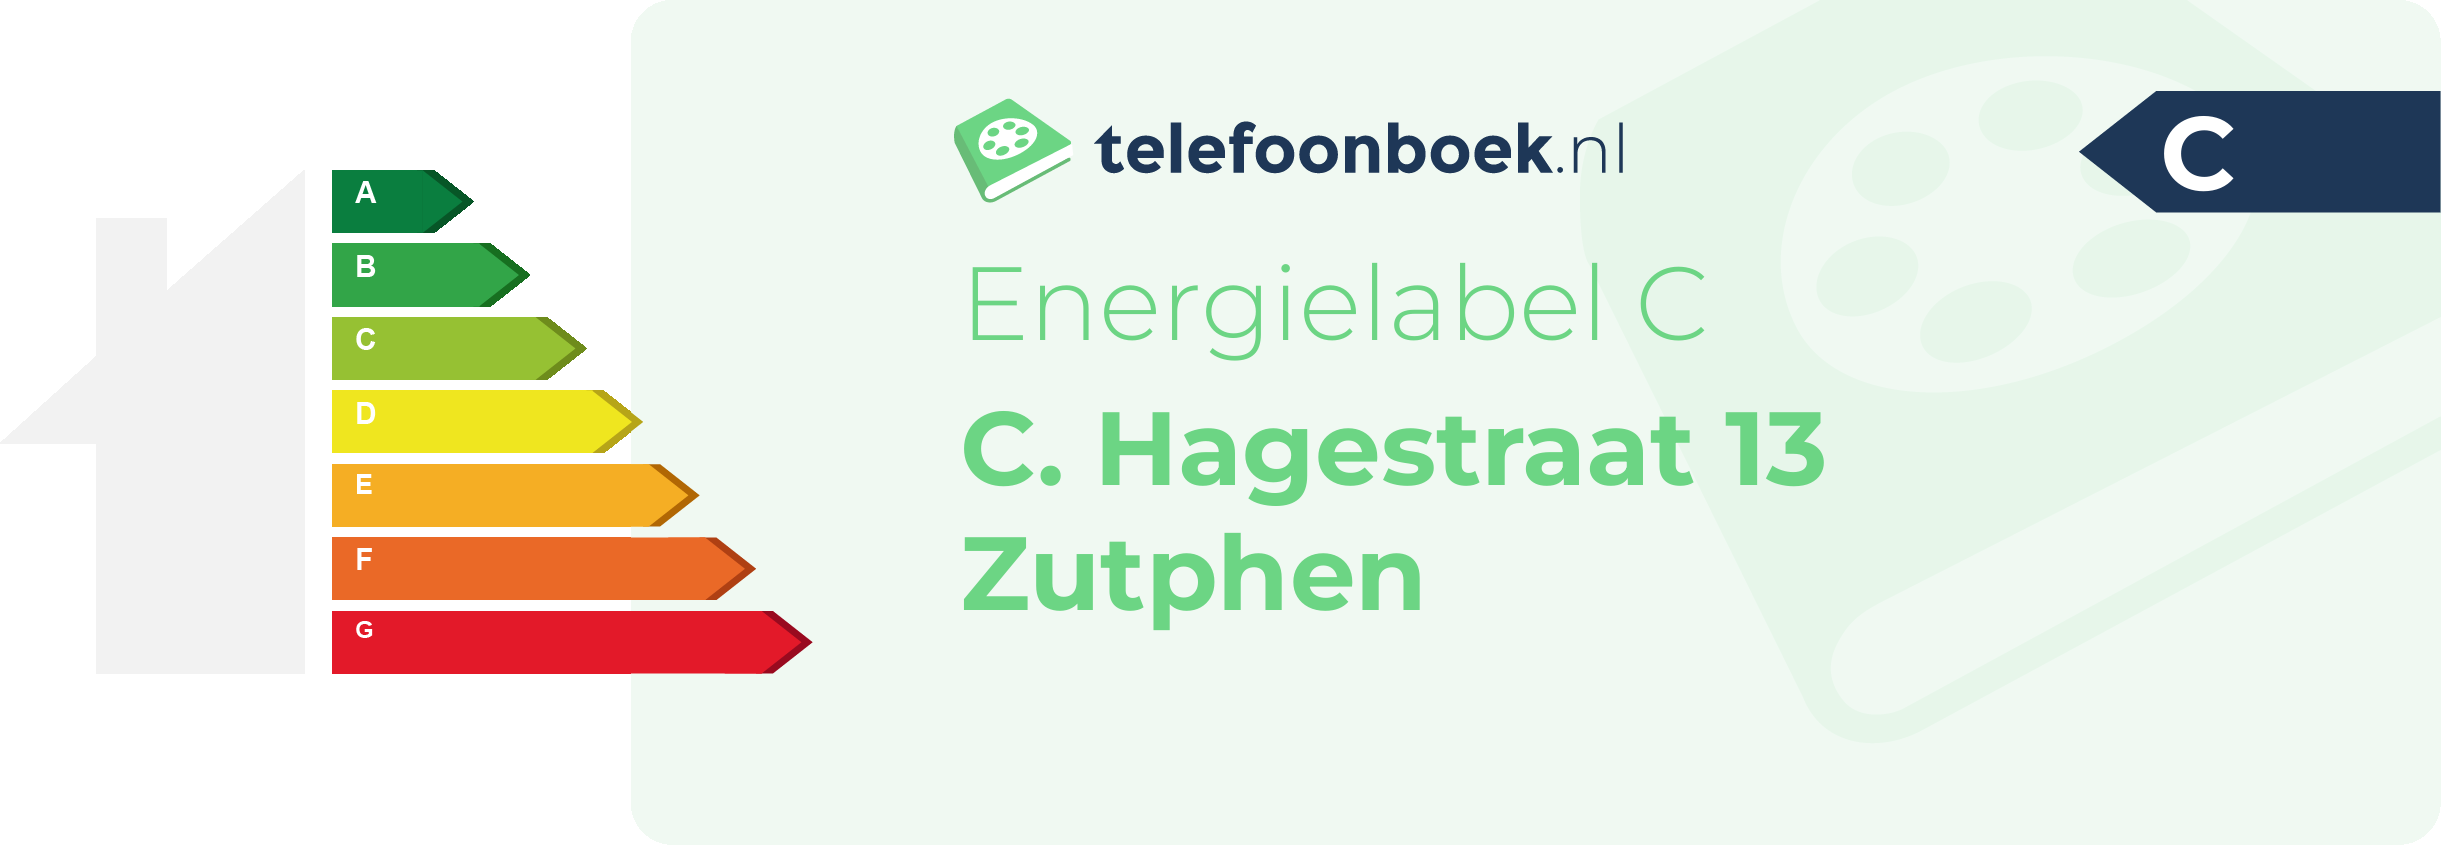 Energielabel C. Hagestraat 13 Zutphen